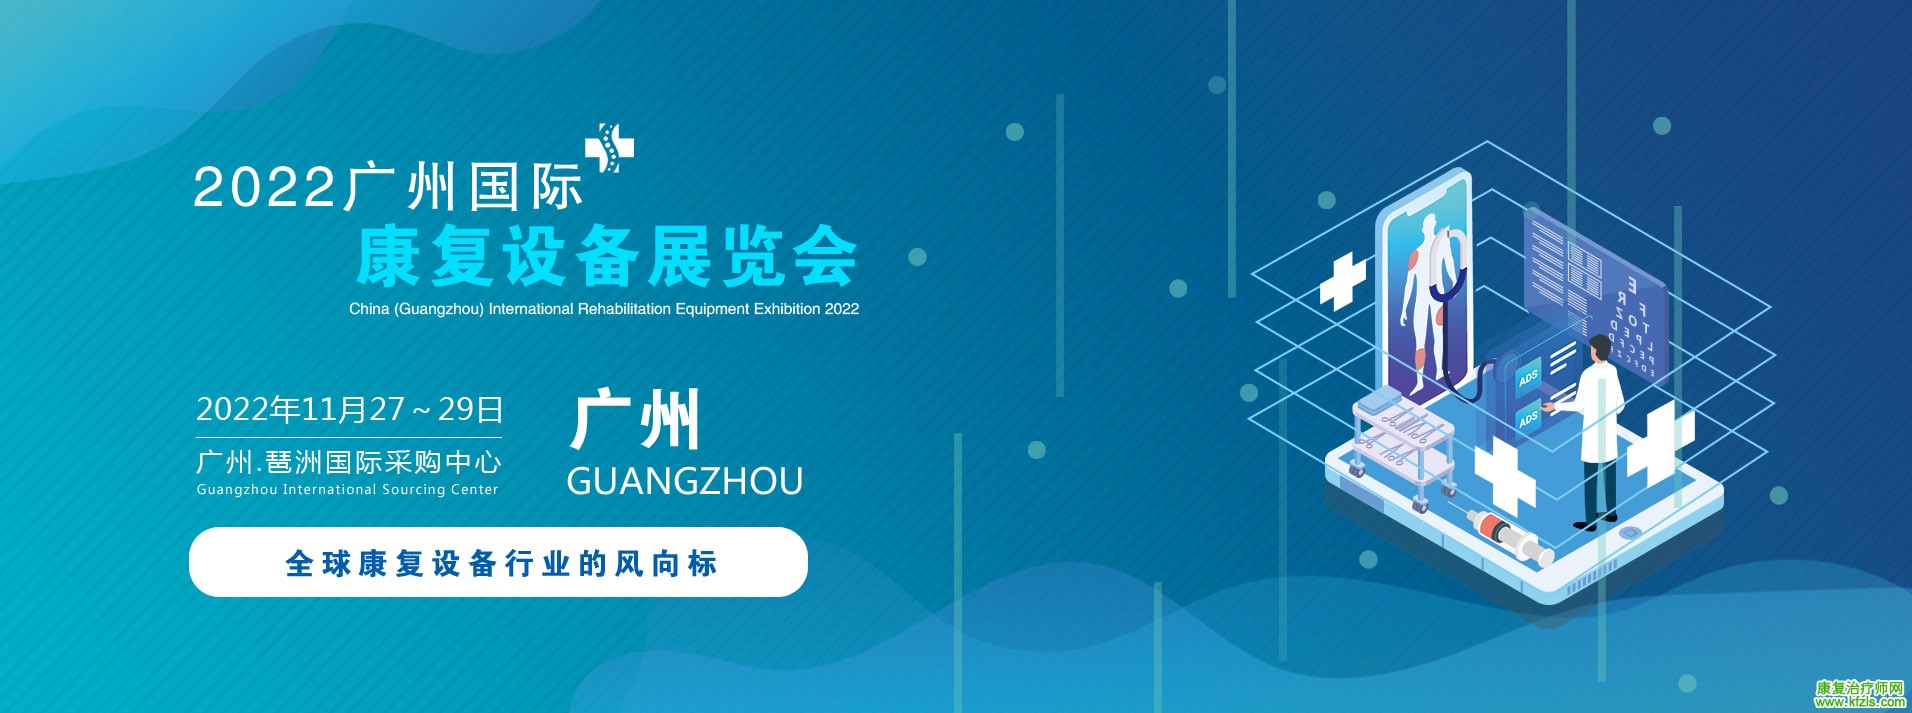 2022中国(广州)国际康复设备展览会.jpg